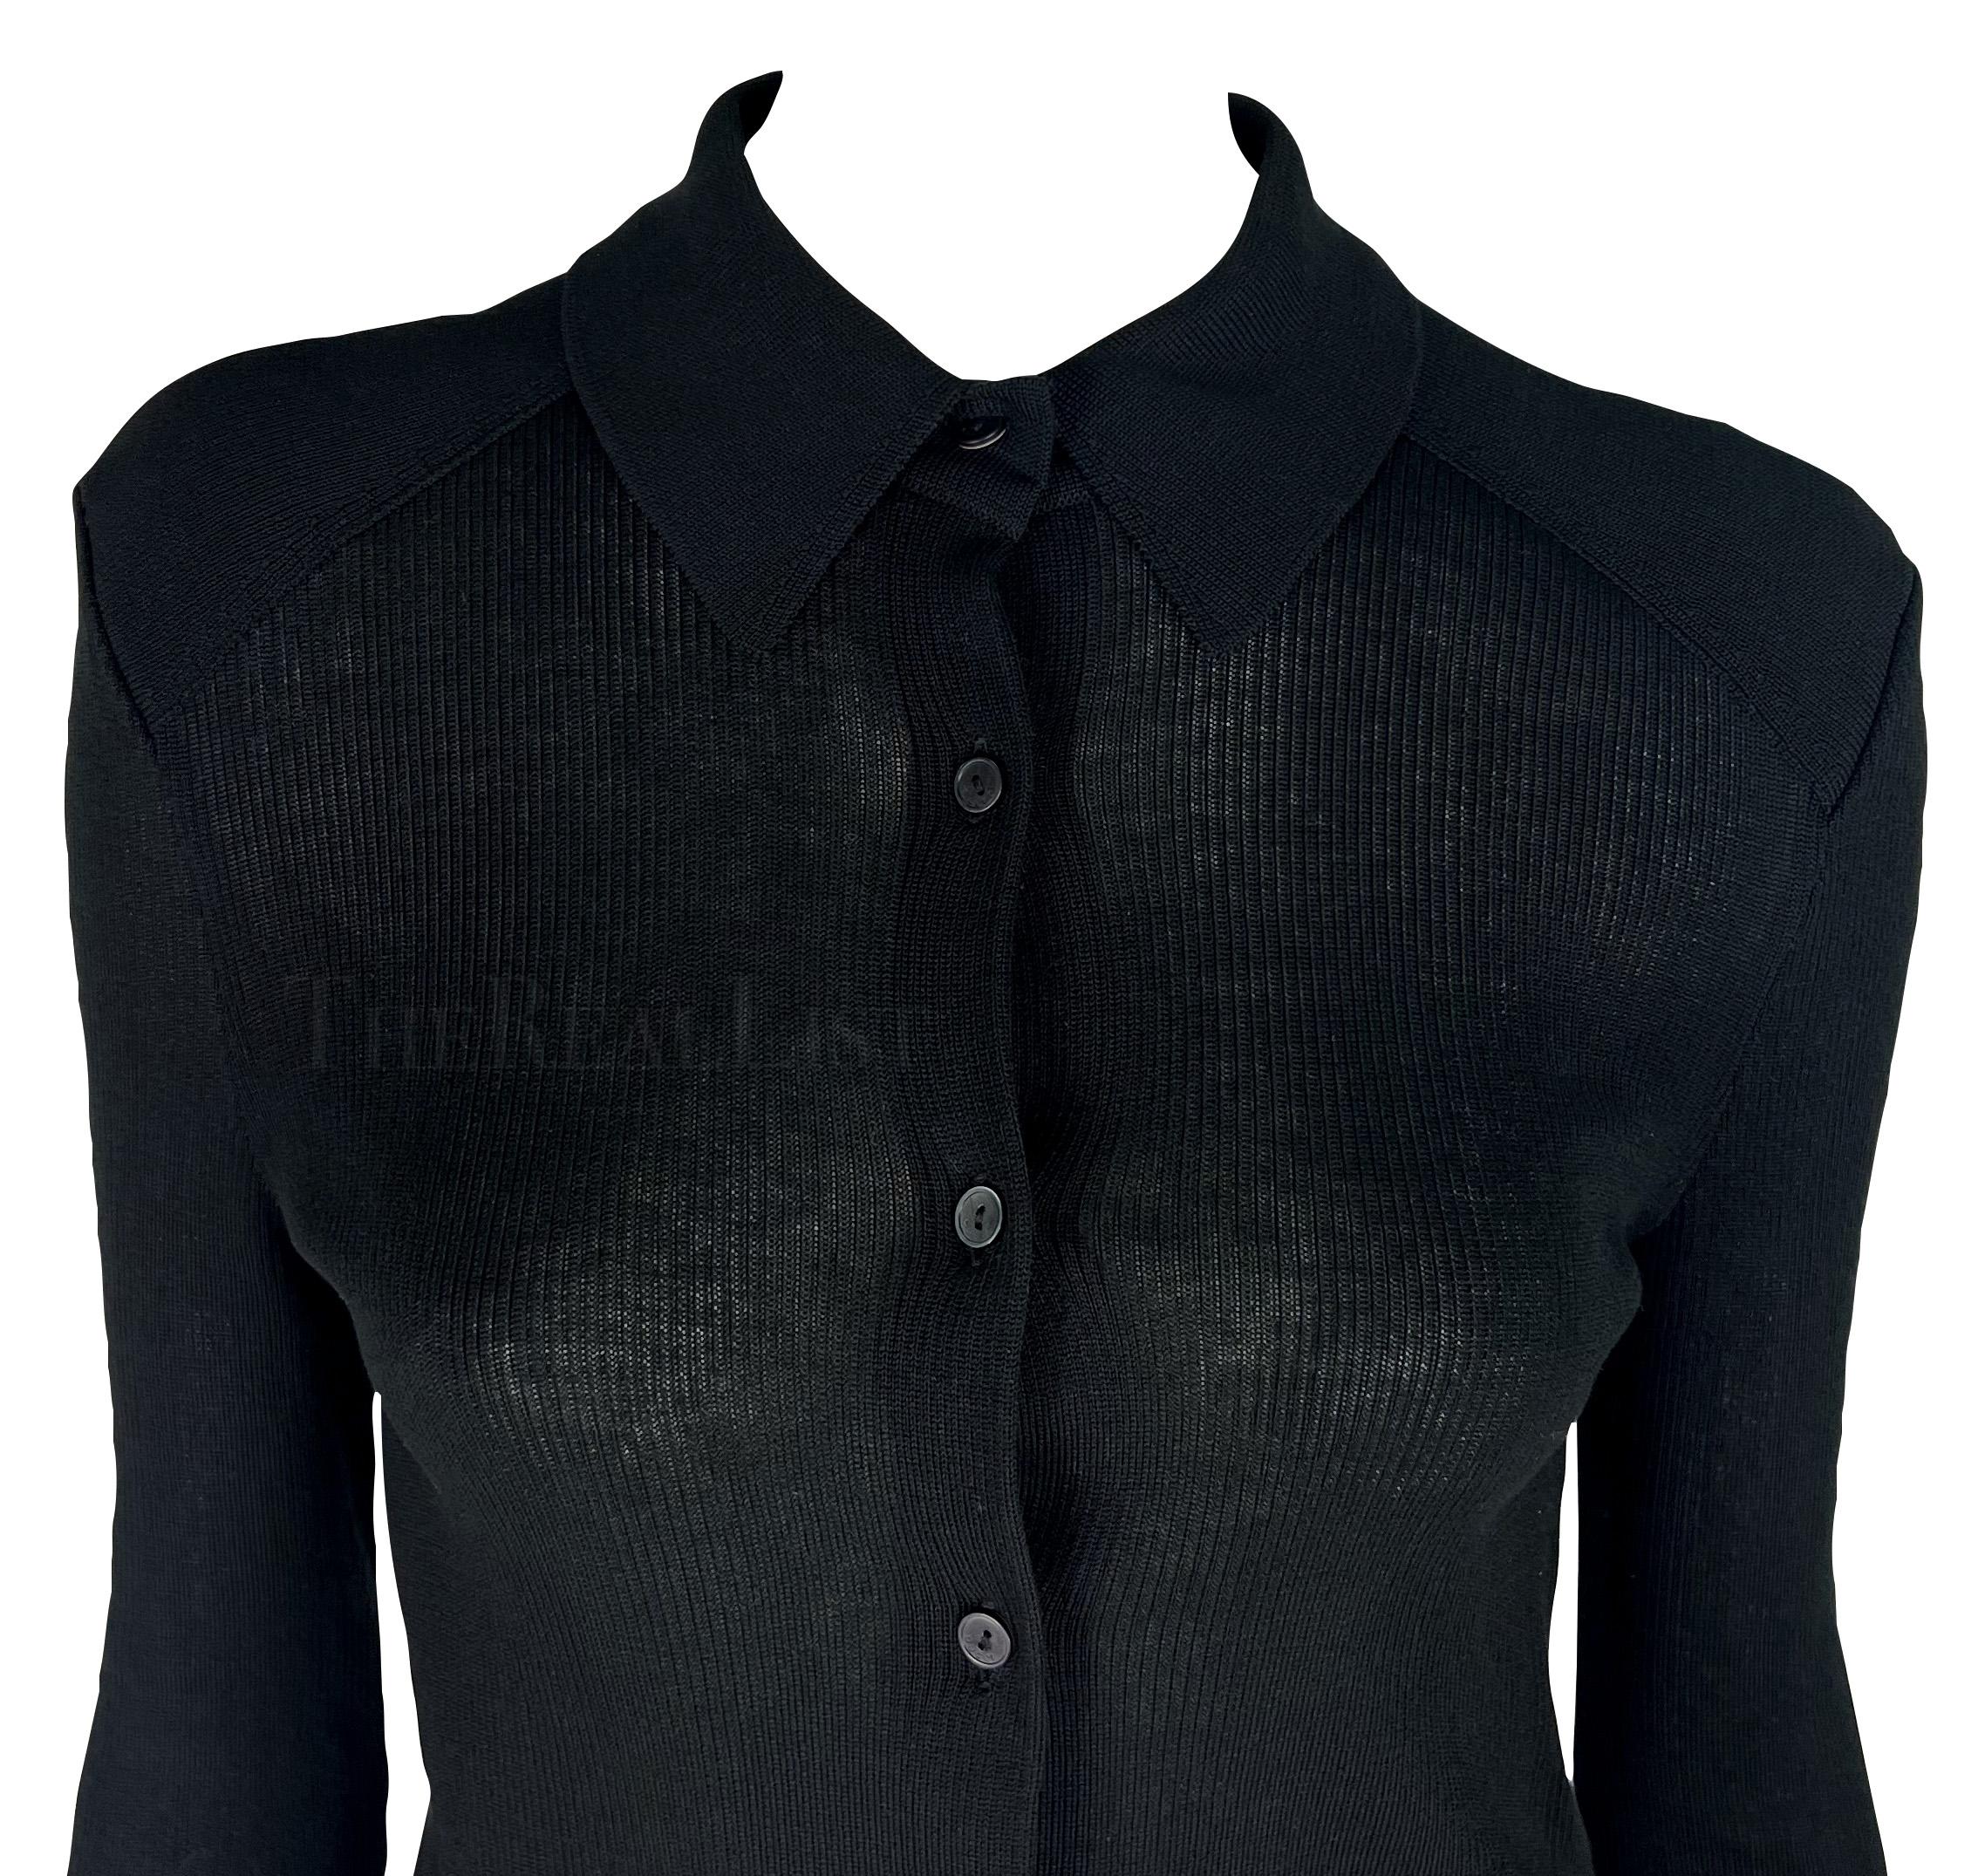 Je vous présente un fabuleux pull Gucci en maille noire, dessiné par Tom Ford. De 1998, ce cardigan noir semi-transparent chic est doté d'un col et d'une fermeture boutonnée. D'un chic sans faille, ce haut en maille Gucci by Tom Ford est le